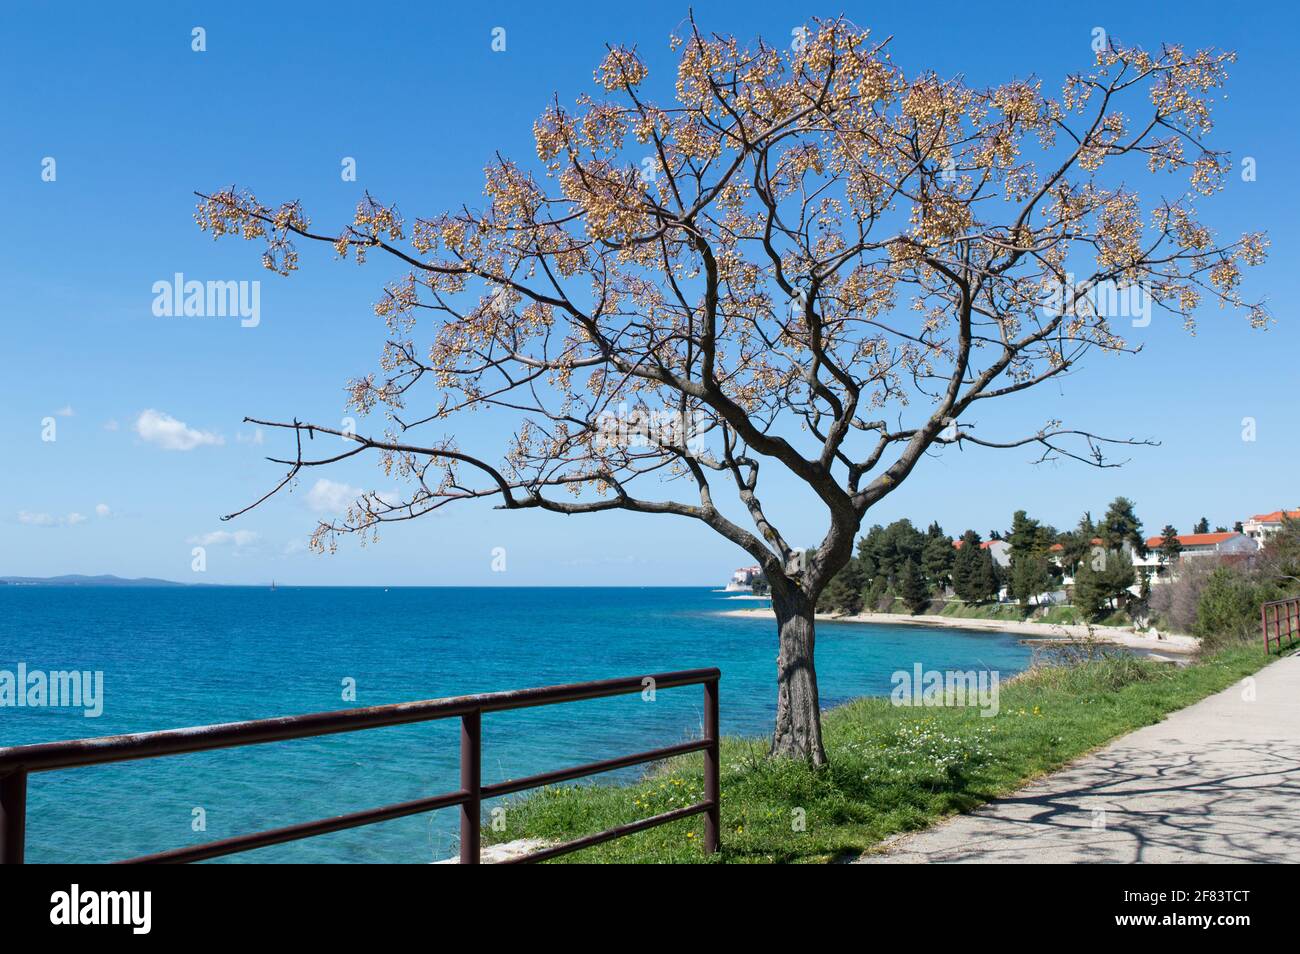 Adriaküste und Promenade in Zadar mit schönen Baum Melia azedarach, bekannt als Chinaberry Baum mit vielen Früchten, Steinfrüchte Stockfoto